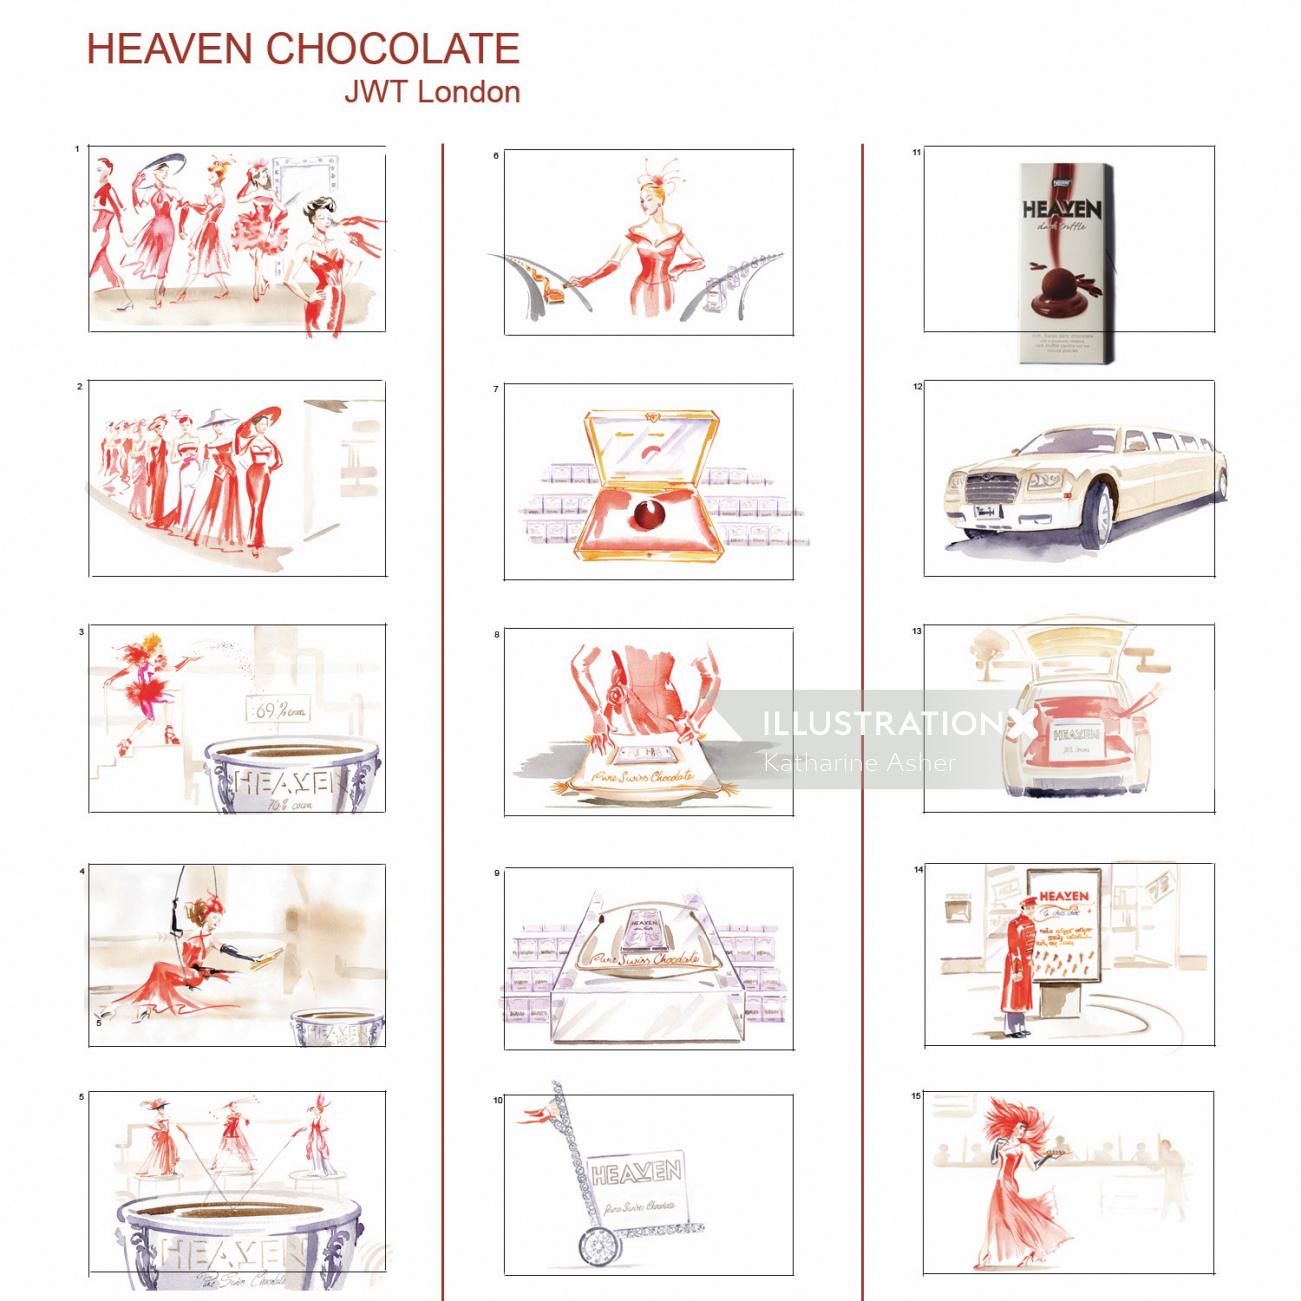 Tablero de chocolate del cielo por Katharine Asher